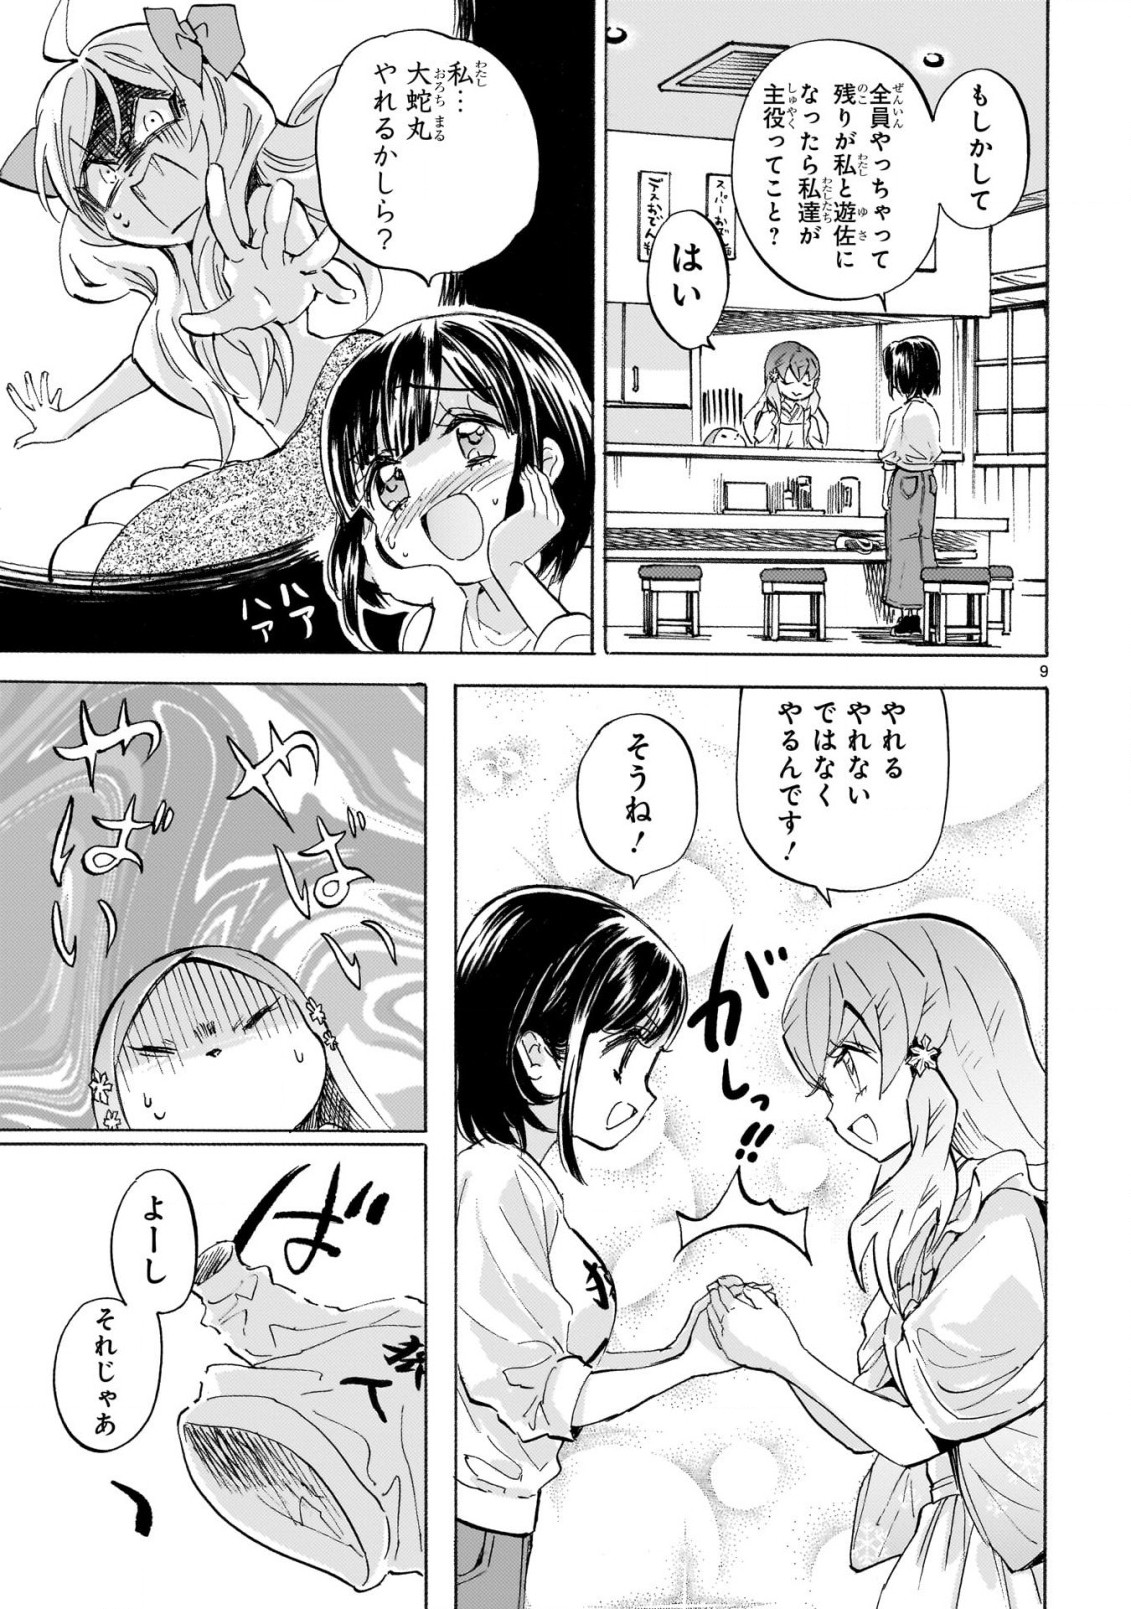 Jashin-chan Dropkick - Chapter 232 - Page 9